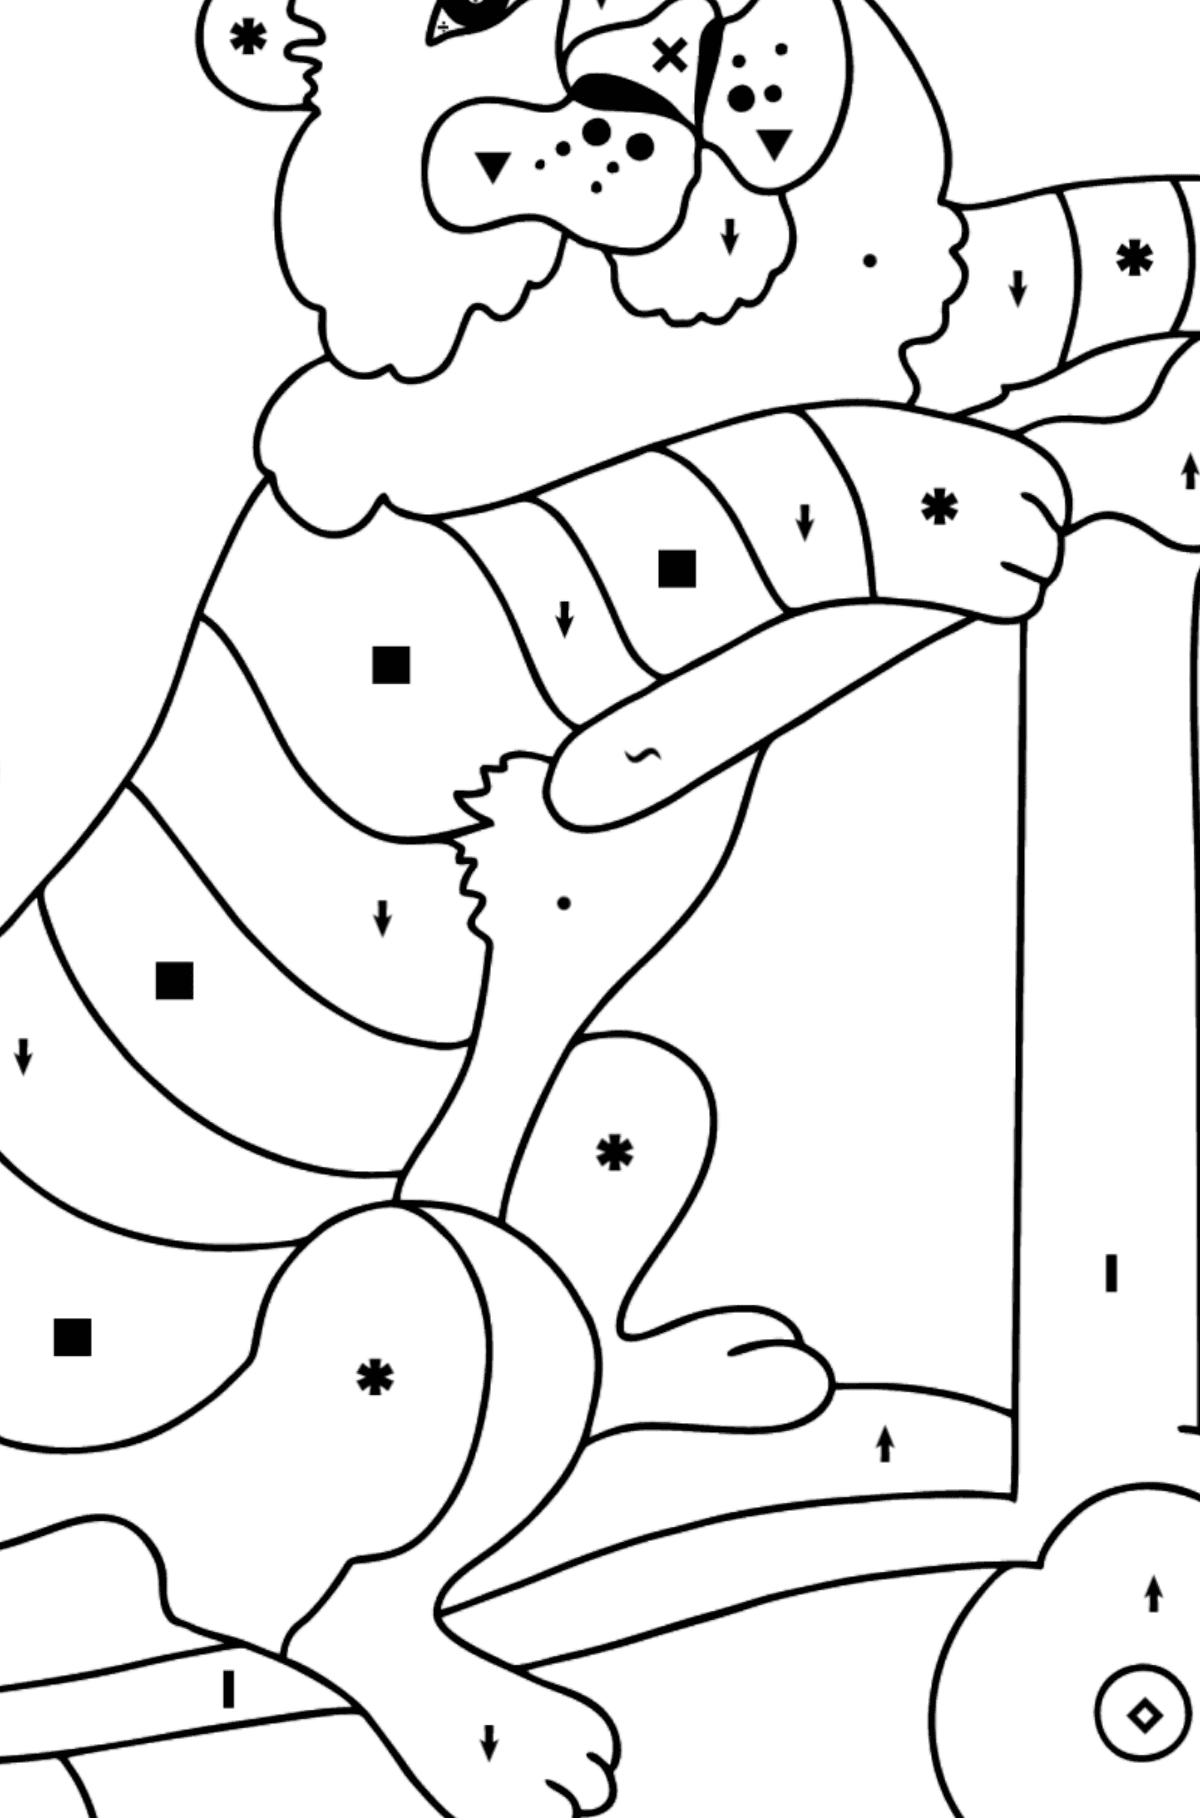 Kleurplaat grappige tijger (moeilijk) - Kleuren met symbolen voor kinderen